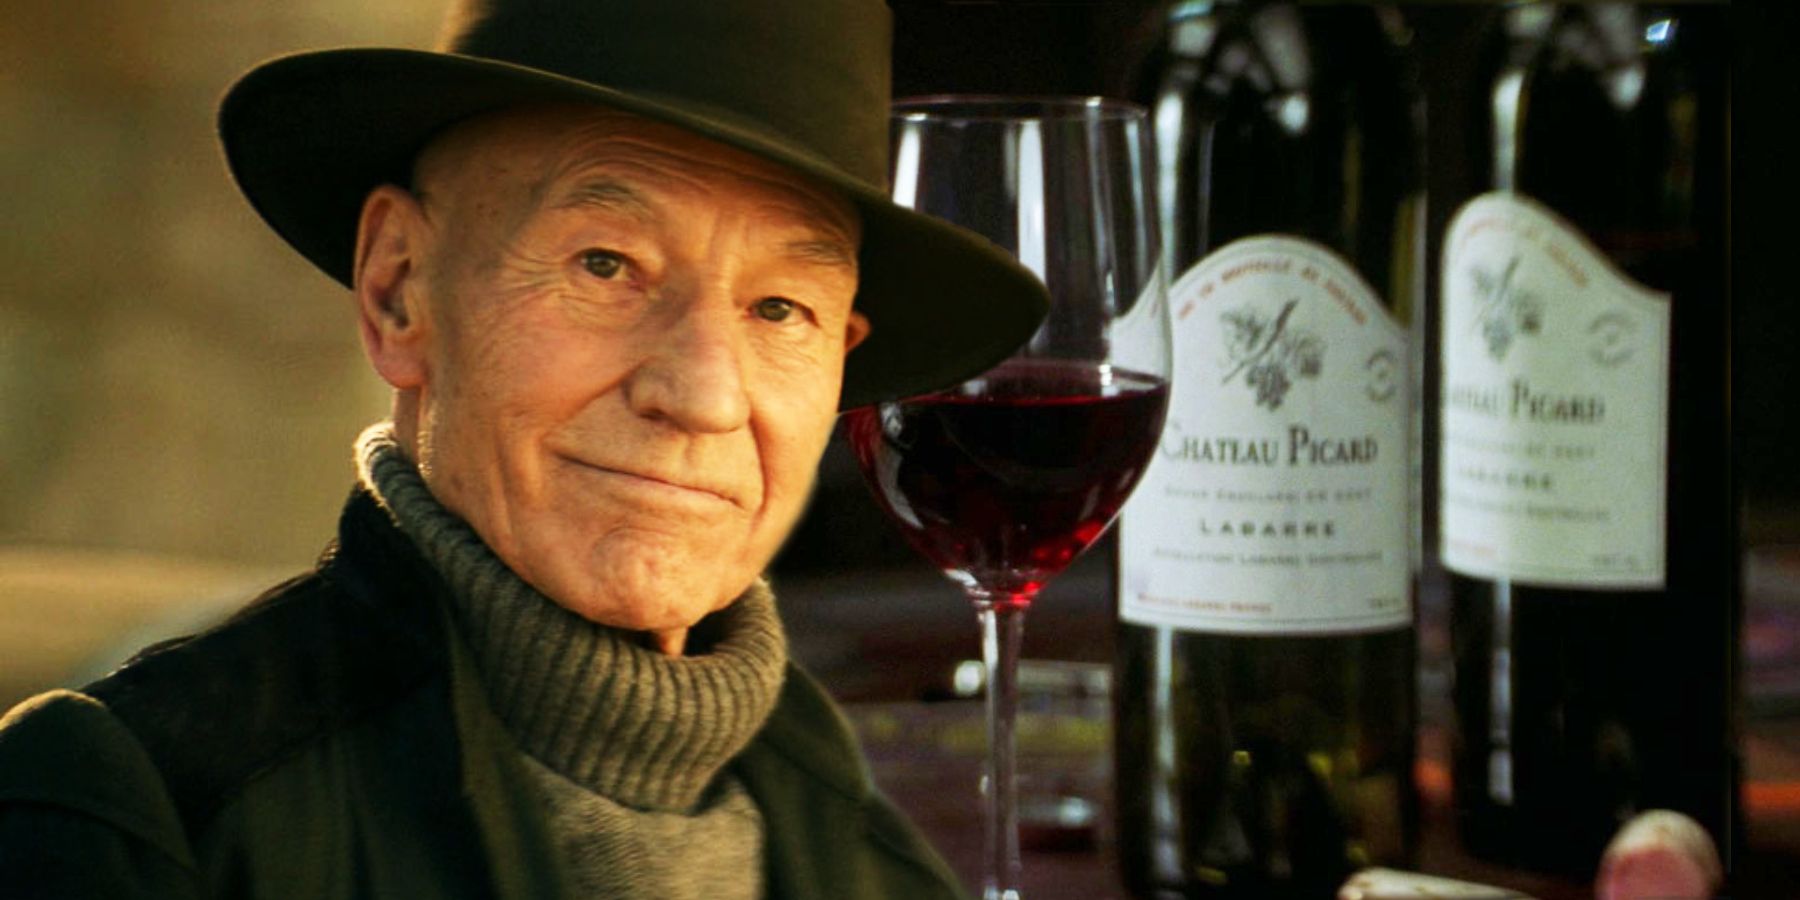 Chateau Picard: la historia de Star Trek del vino familiar de Jean-Luc